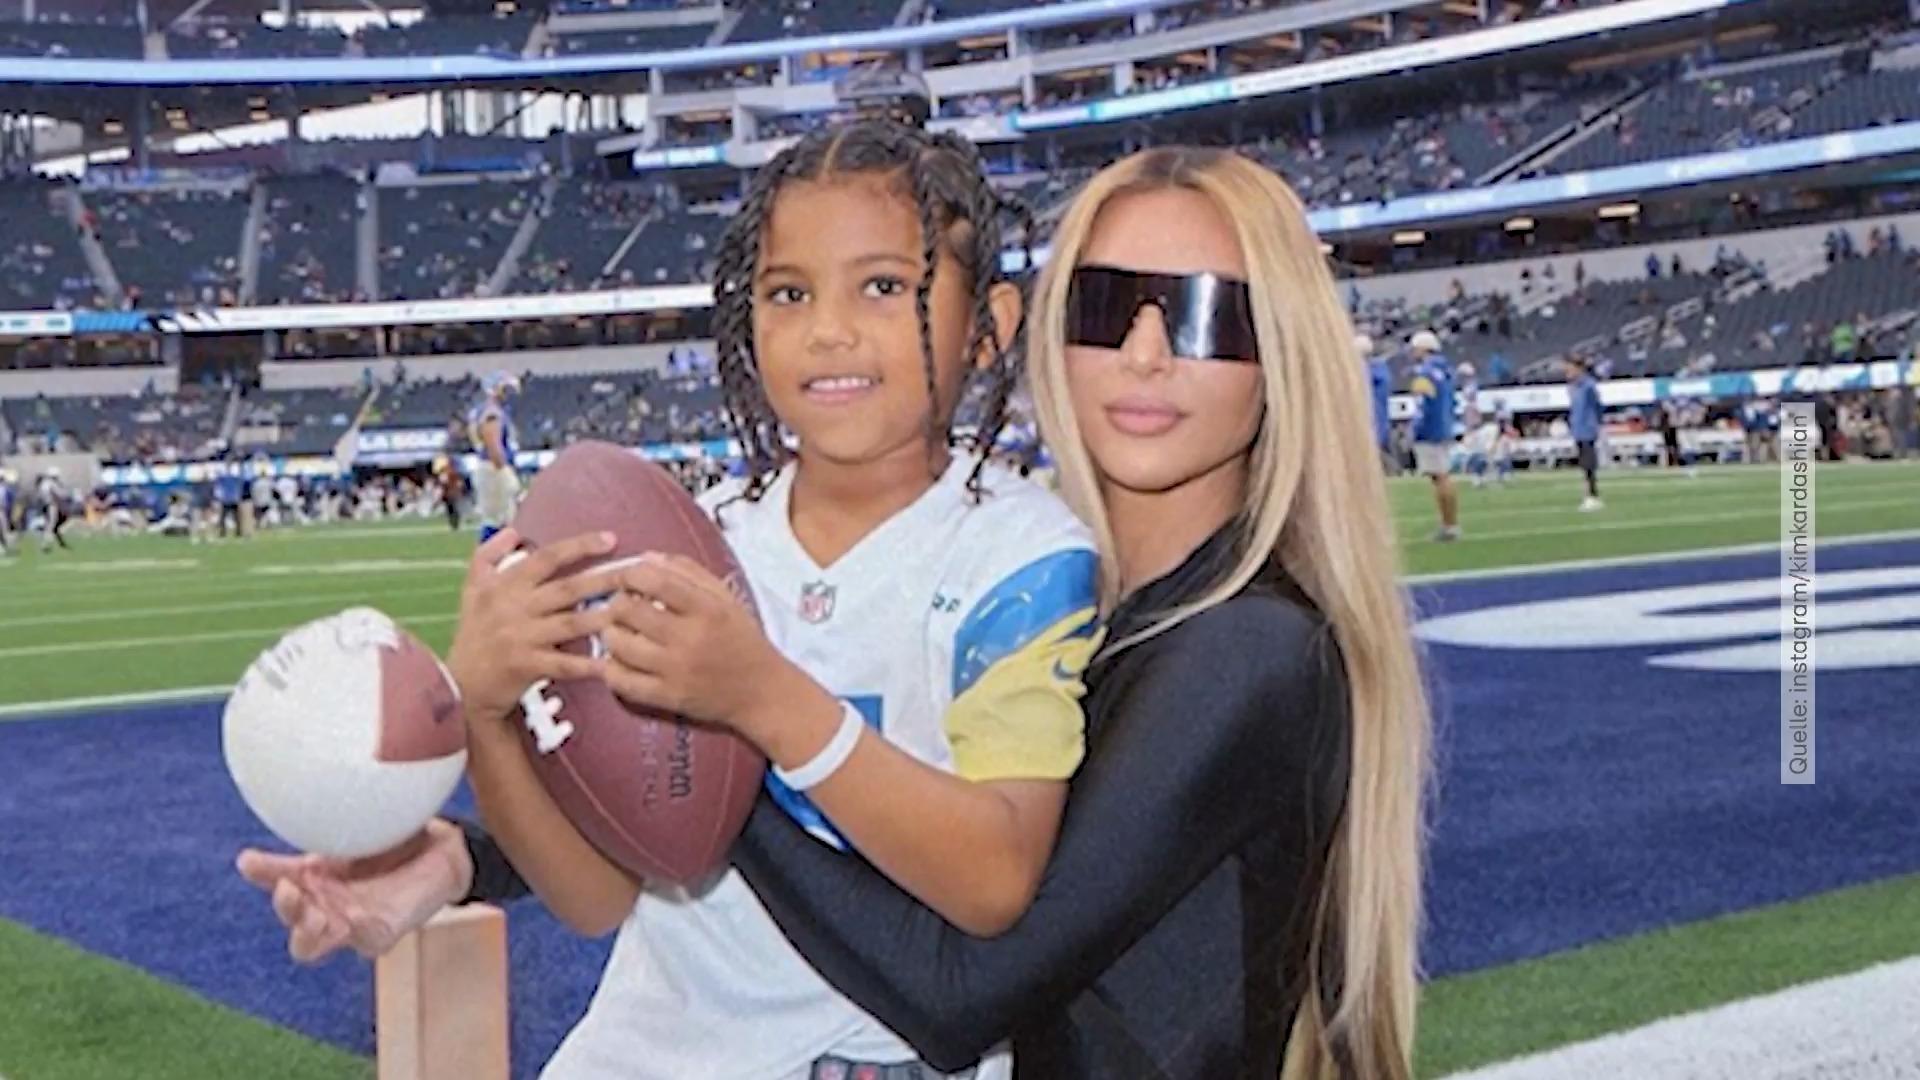 Kim Kardashian feiert den 7. Geburtstag ihres Sohnes Bei einem NFL-Spiel